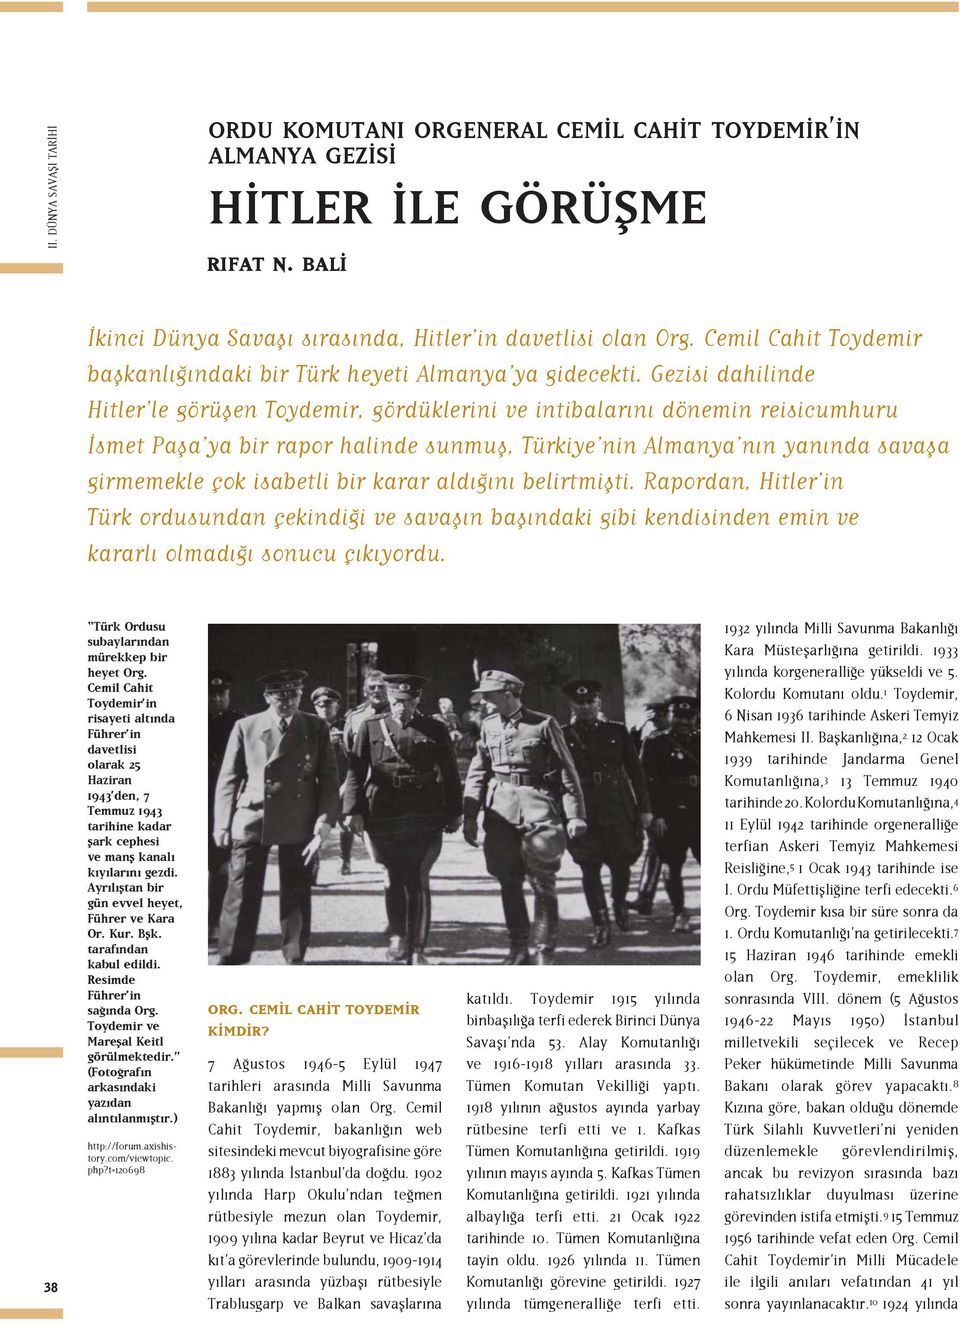 Gezisi dahilinde Hitler le görüşen Toydemir, gördüklerini ve intibalarını dönemin reisicumhuru İsmet Paşa ya bir rapor halinde sunmuş, Türkiye nin Almanya nın yanında savaşa girmemekle çok isabetli